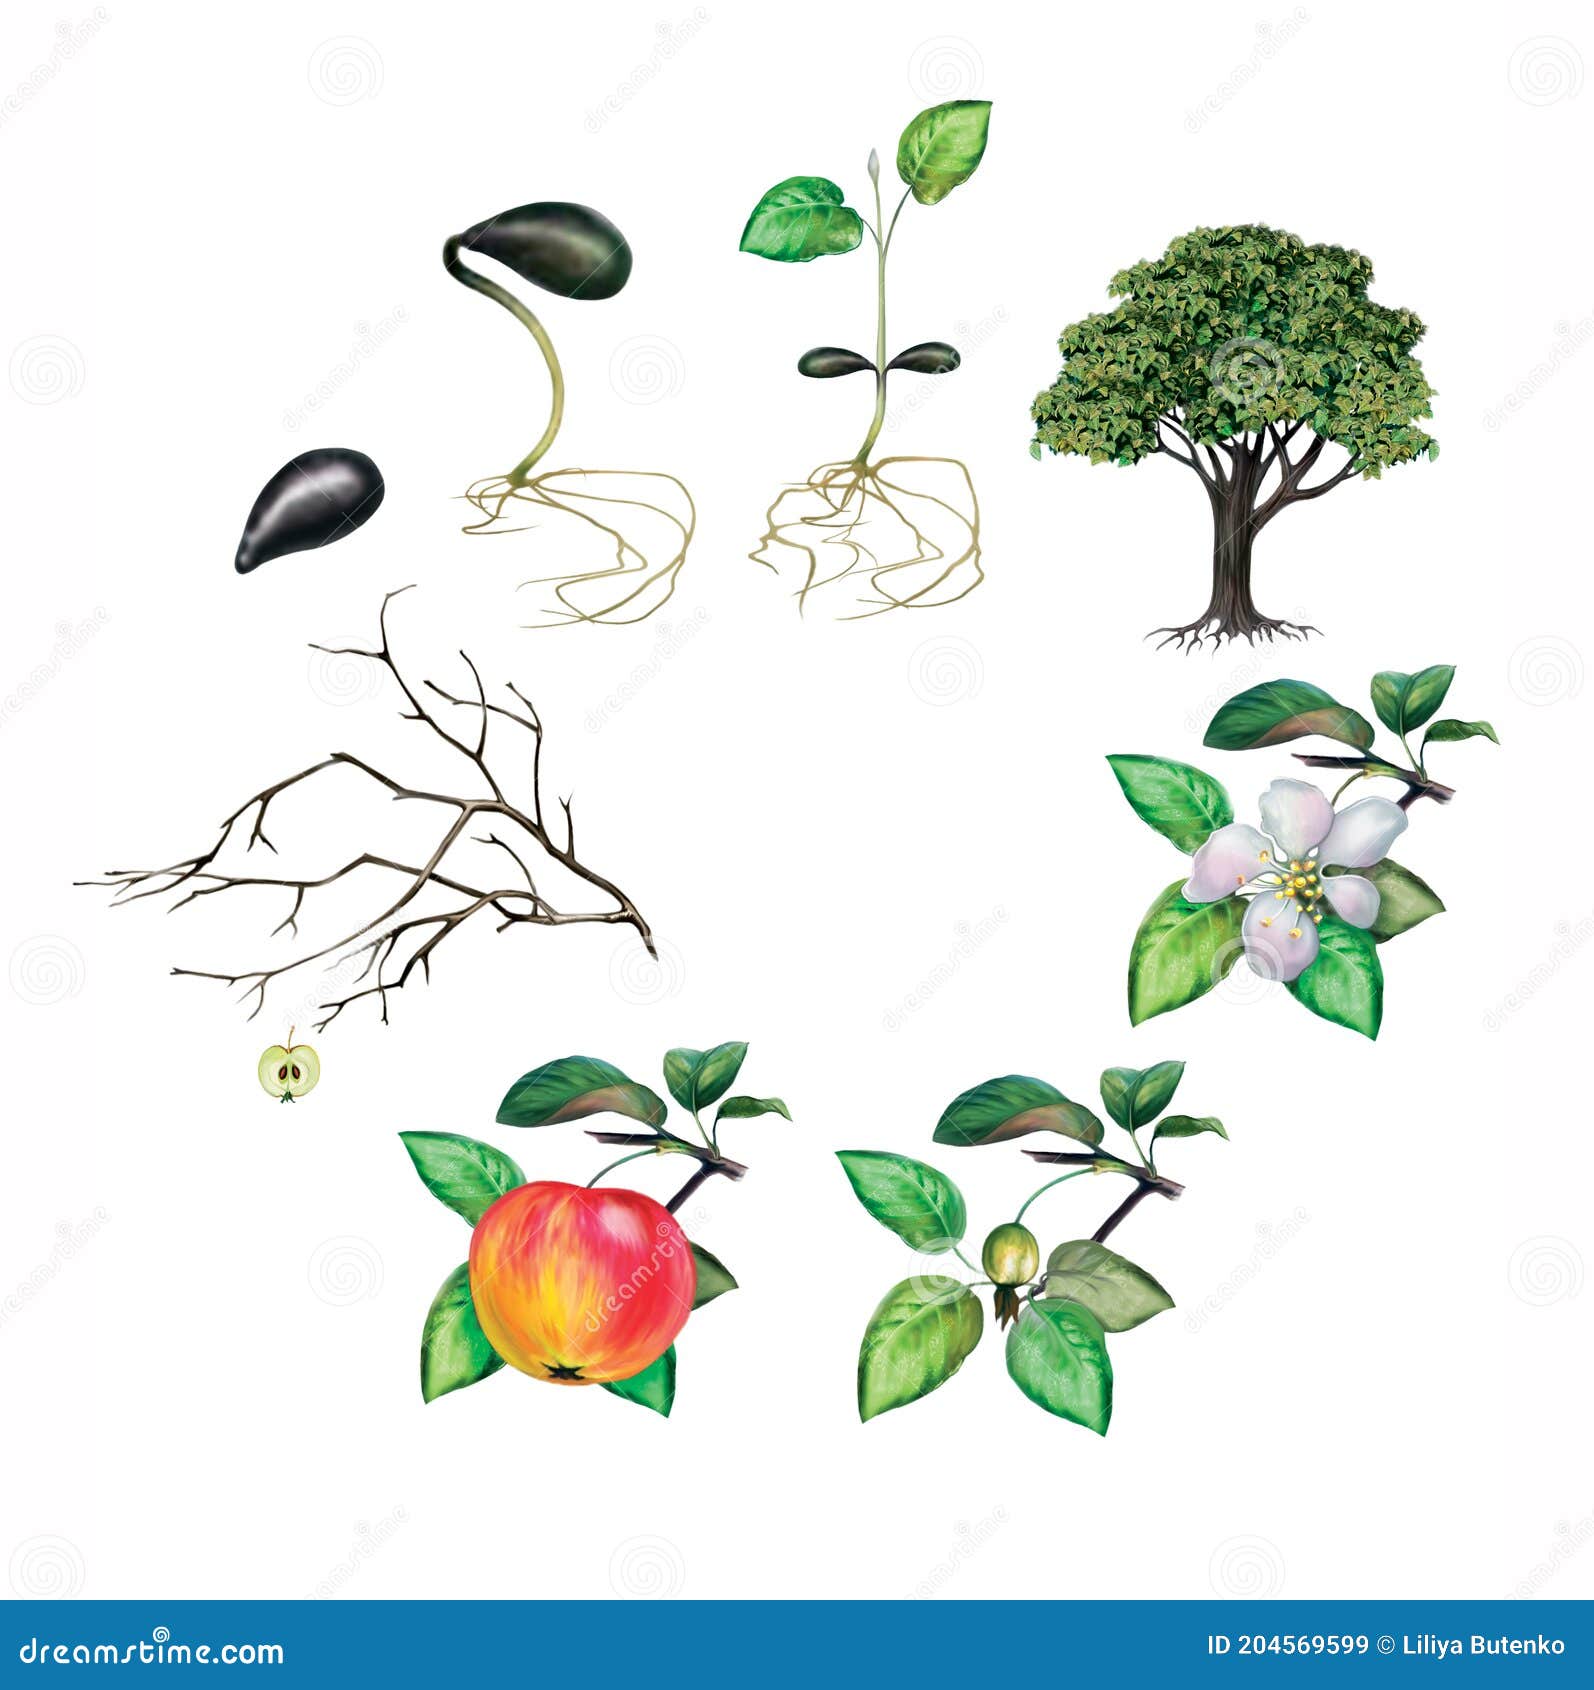 Жизненный цикл овощных растений по маркову. Жизненный цикл растений для дошкольников. Жизненный цикл растений яблони. Жизненный цикл растений для дошкольников картинки. Графики развития деревьев.